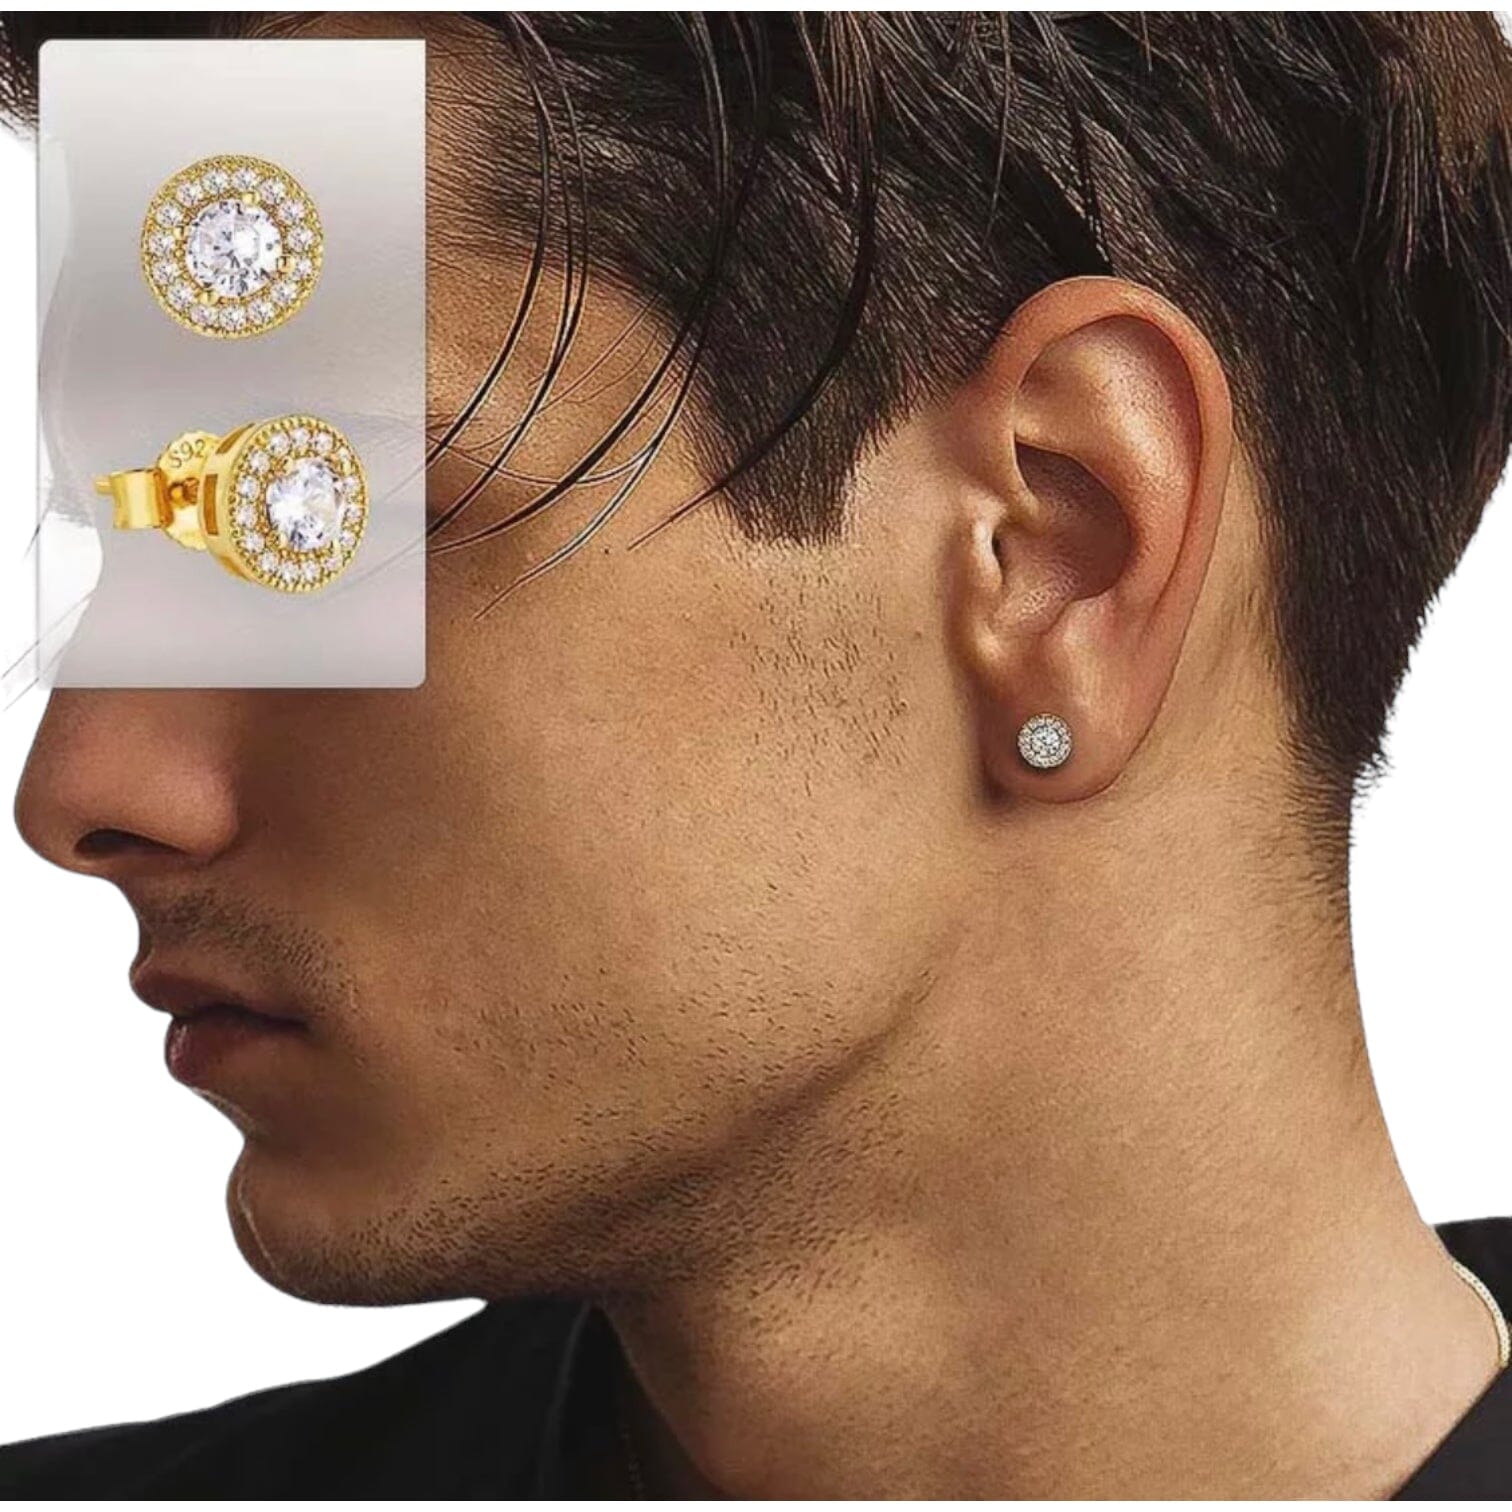 Men Jewelry Mens Earrings Sterling Silver Earring Studs for Men Stud  Earring Men Handmade Jewelry Gift Valentine Gift for Him Handmade Gift -  Etsy | Mens earrings studs, Men earrings, Sterling silver earrings